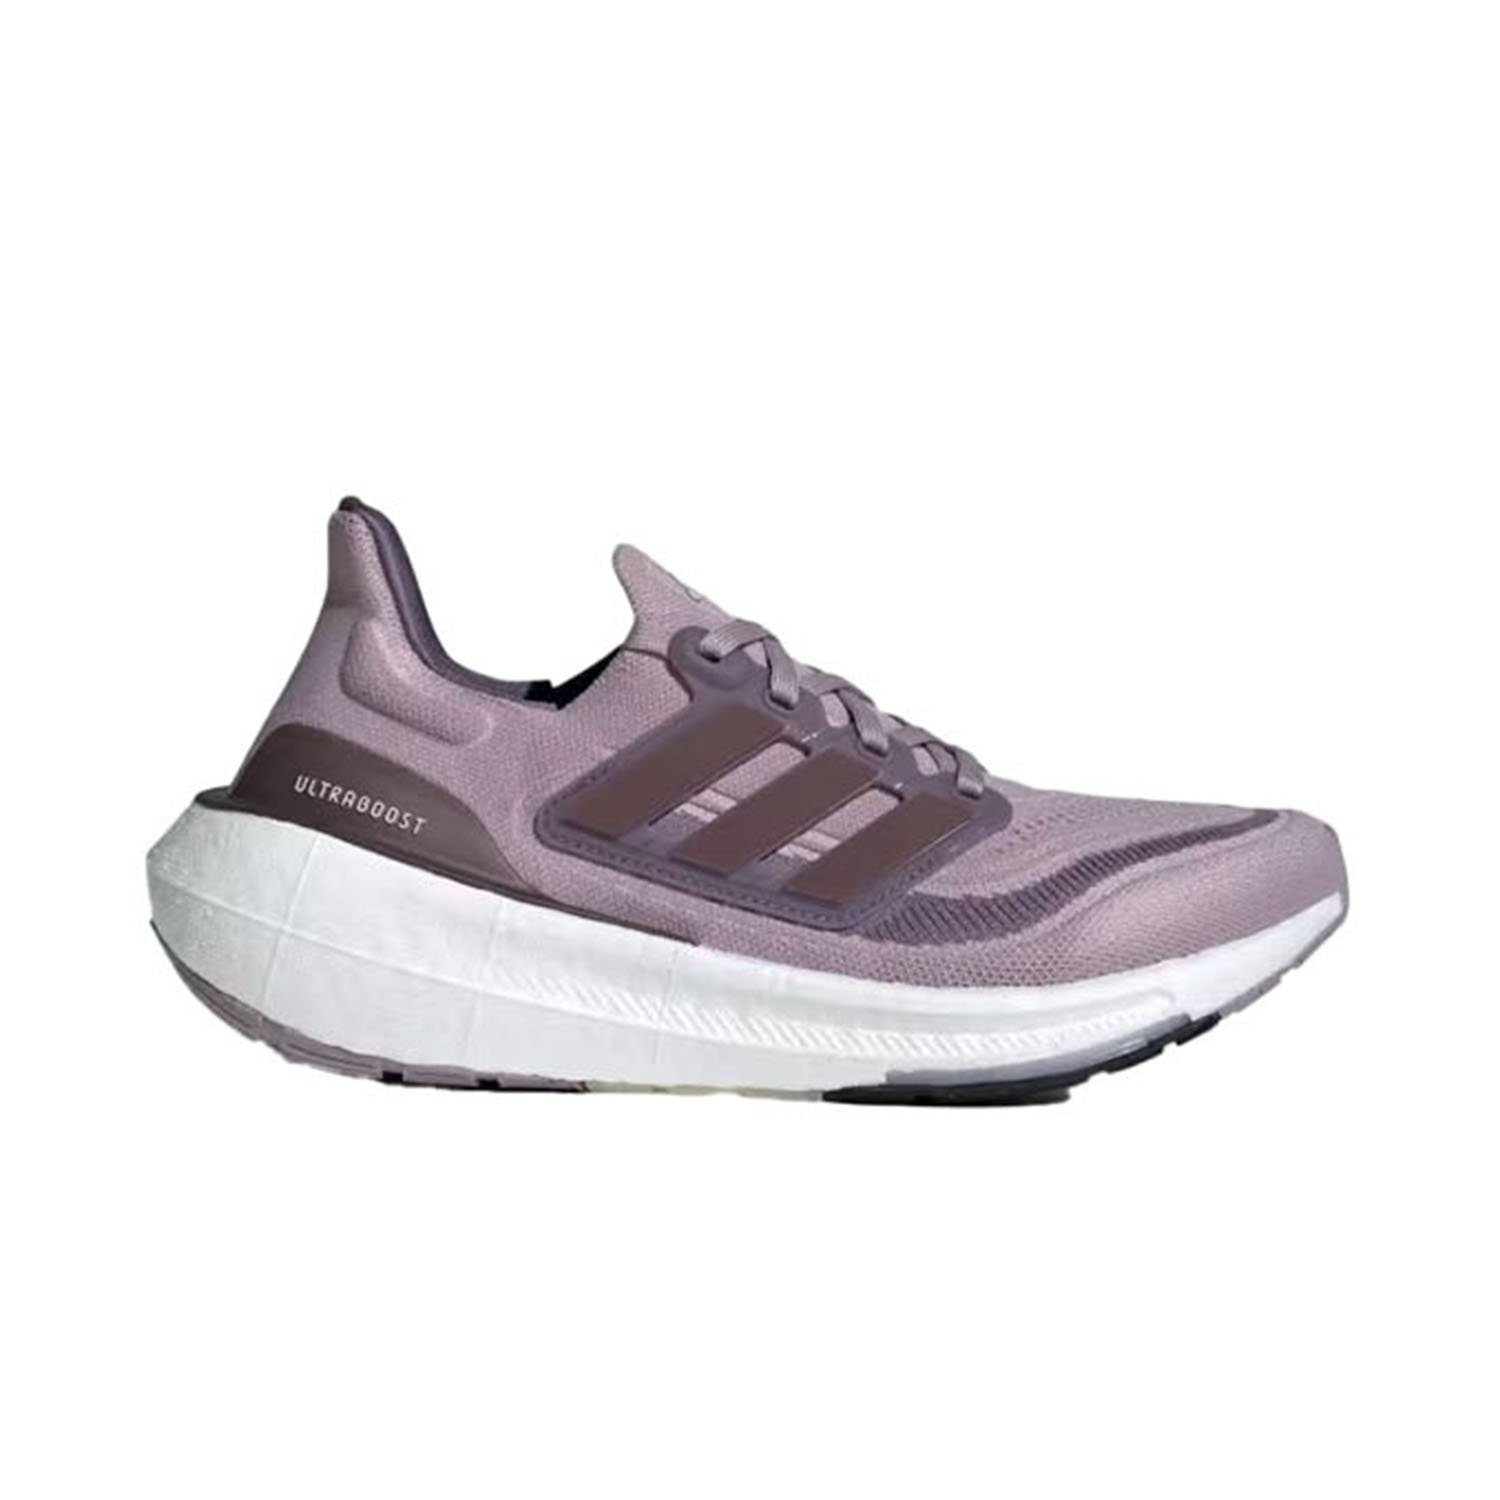 Adidas Ultraboost Light Kadın Yol Koşu Ayakkabısı - Renkli - 1